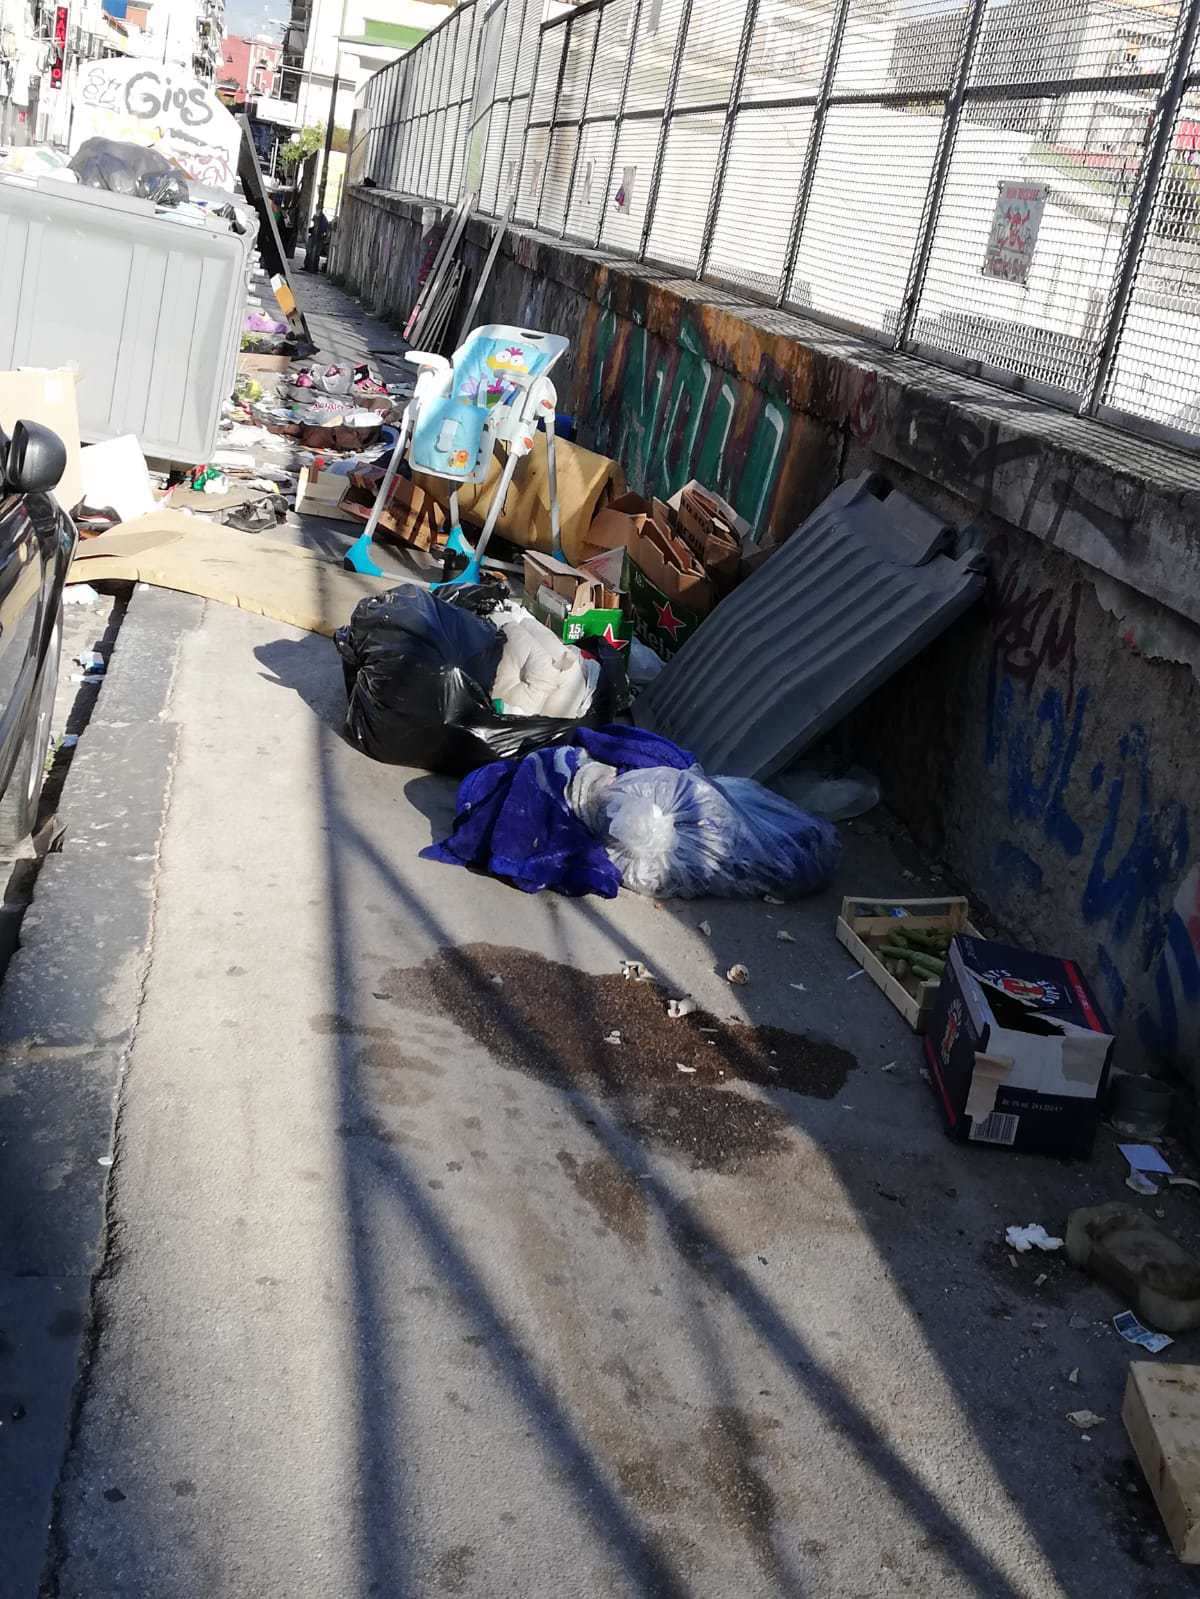 Napoli, ancora emergenza rifiuti e ingombranti per le strade. Via San Cosmo Fuori Porta Nolana come una discarica.